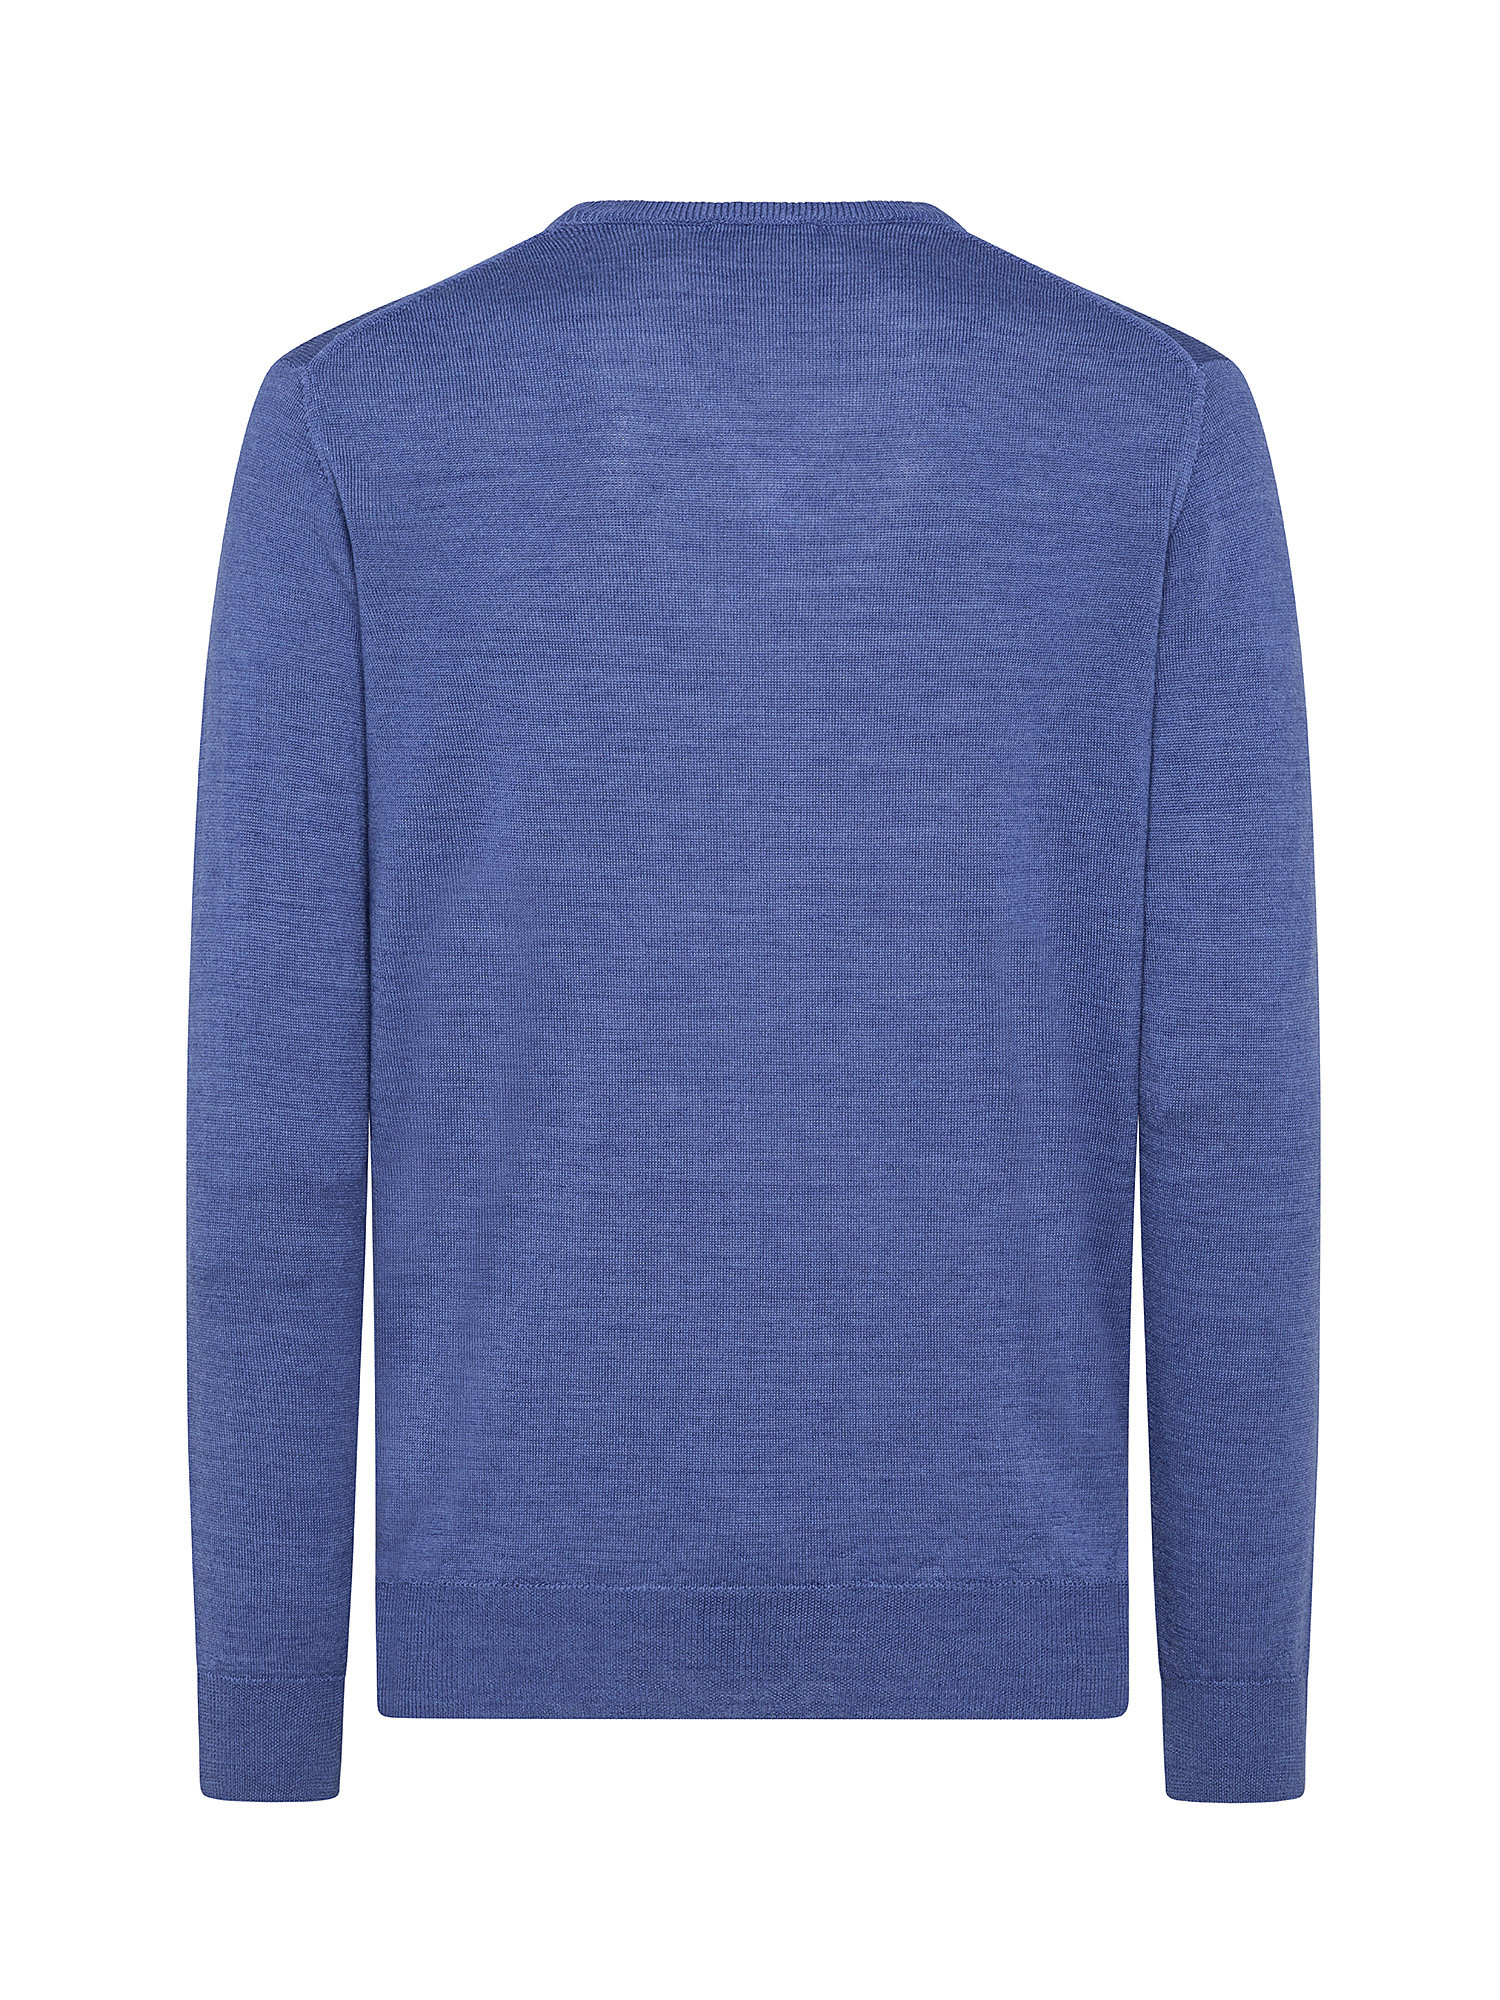 Merino Blend V-neck sweater - Machine washable, Aviation Blue, large image number 1